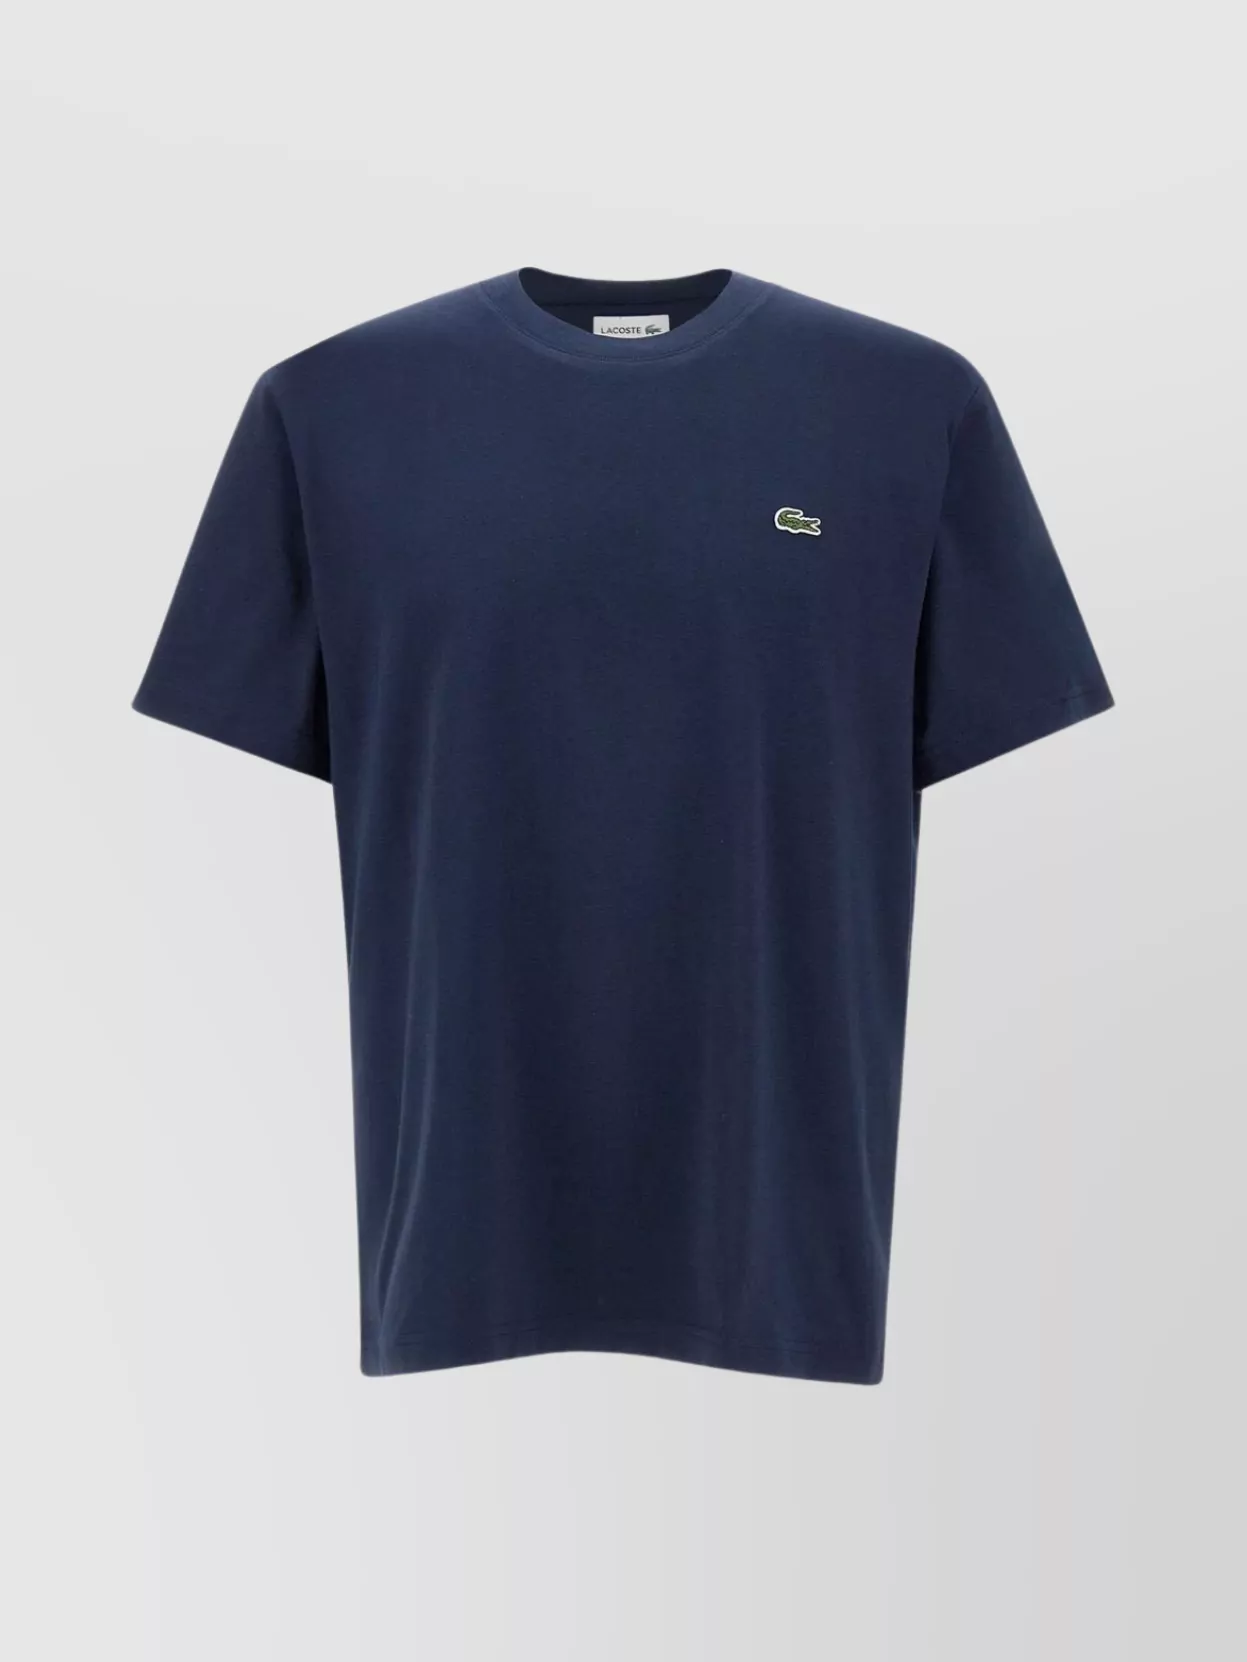 Shop Lacoste Men's Ribbed Crew Neck Cotton T-shirt